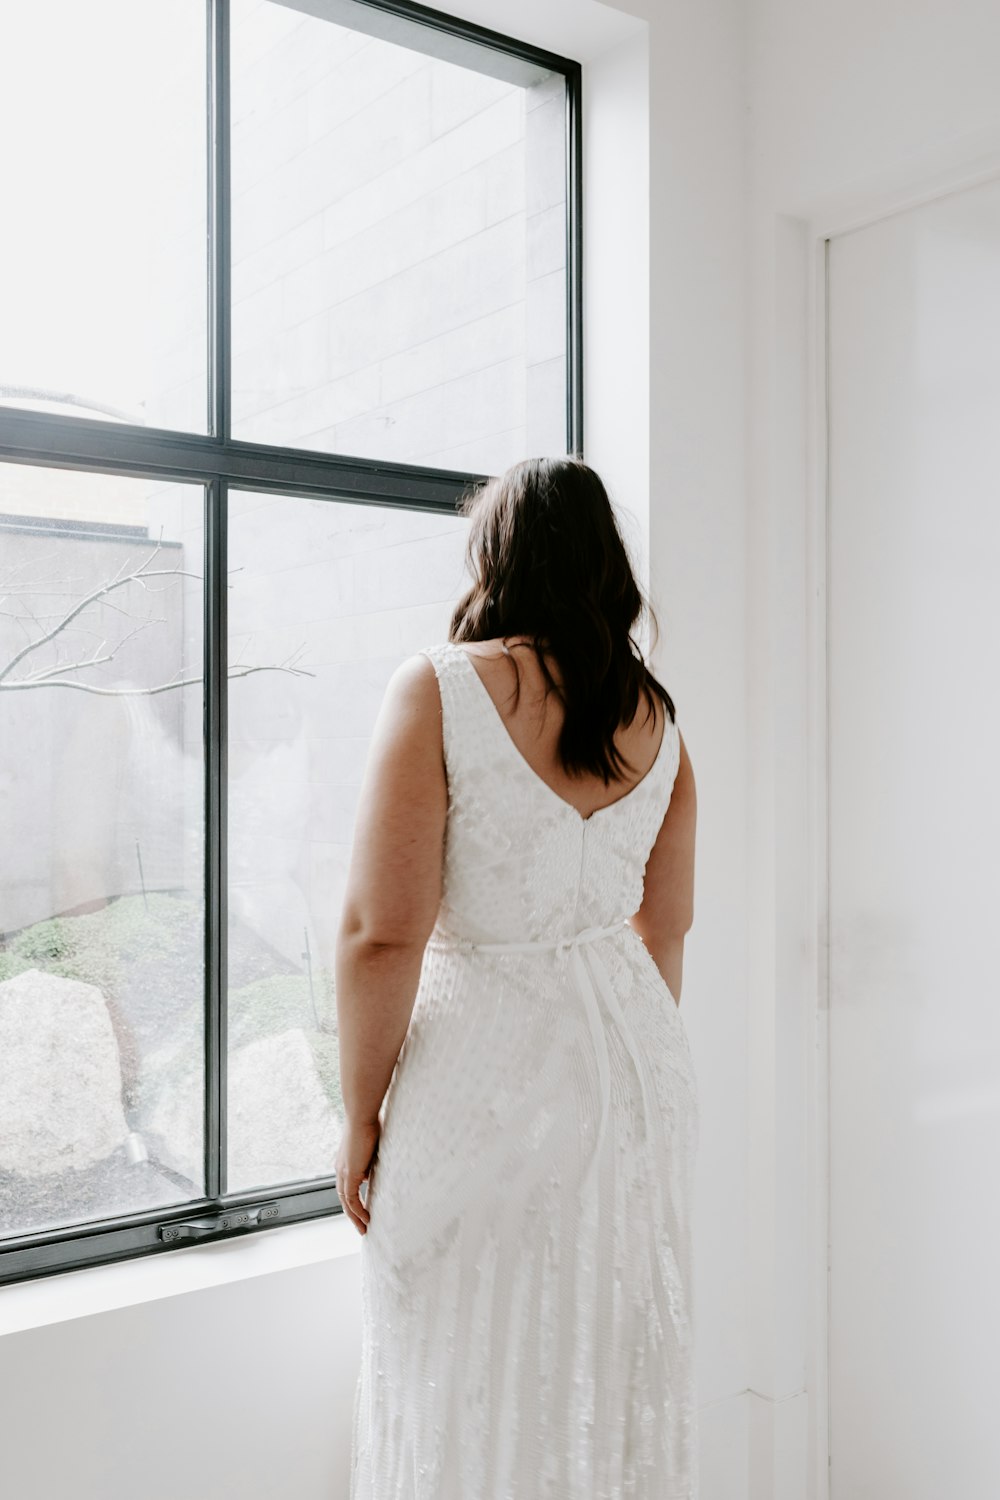 창문 근처에 서 있는 흰색 민소매 드레스를 입은 여자